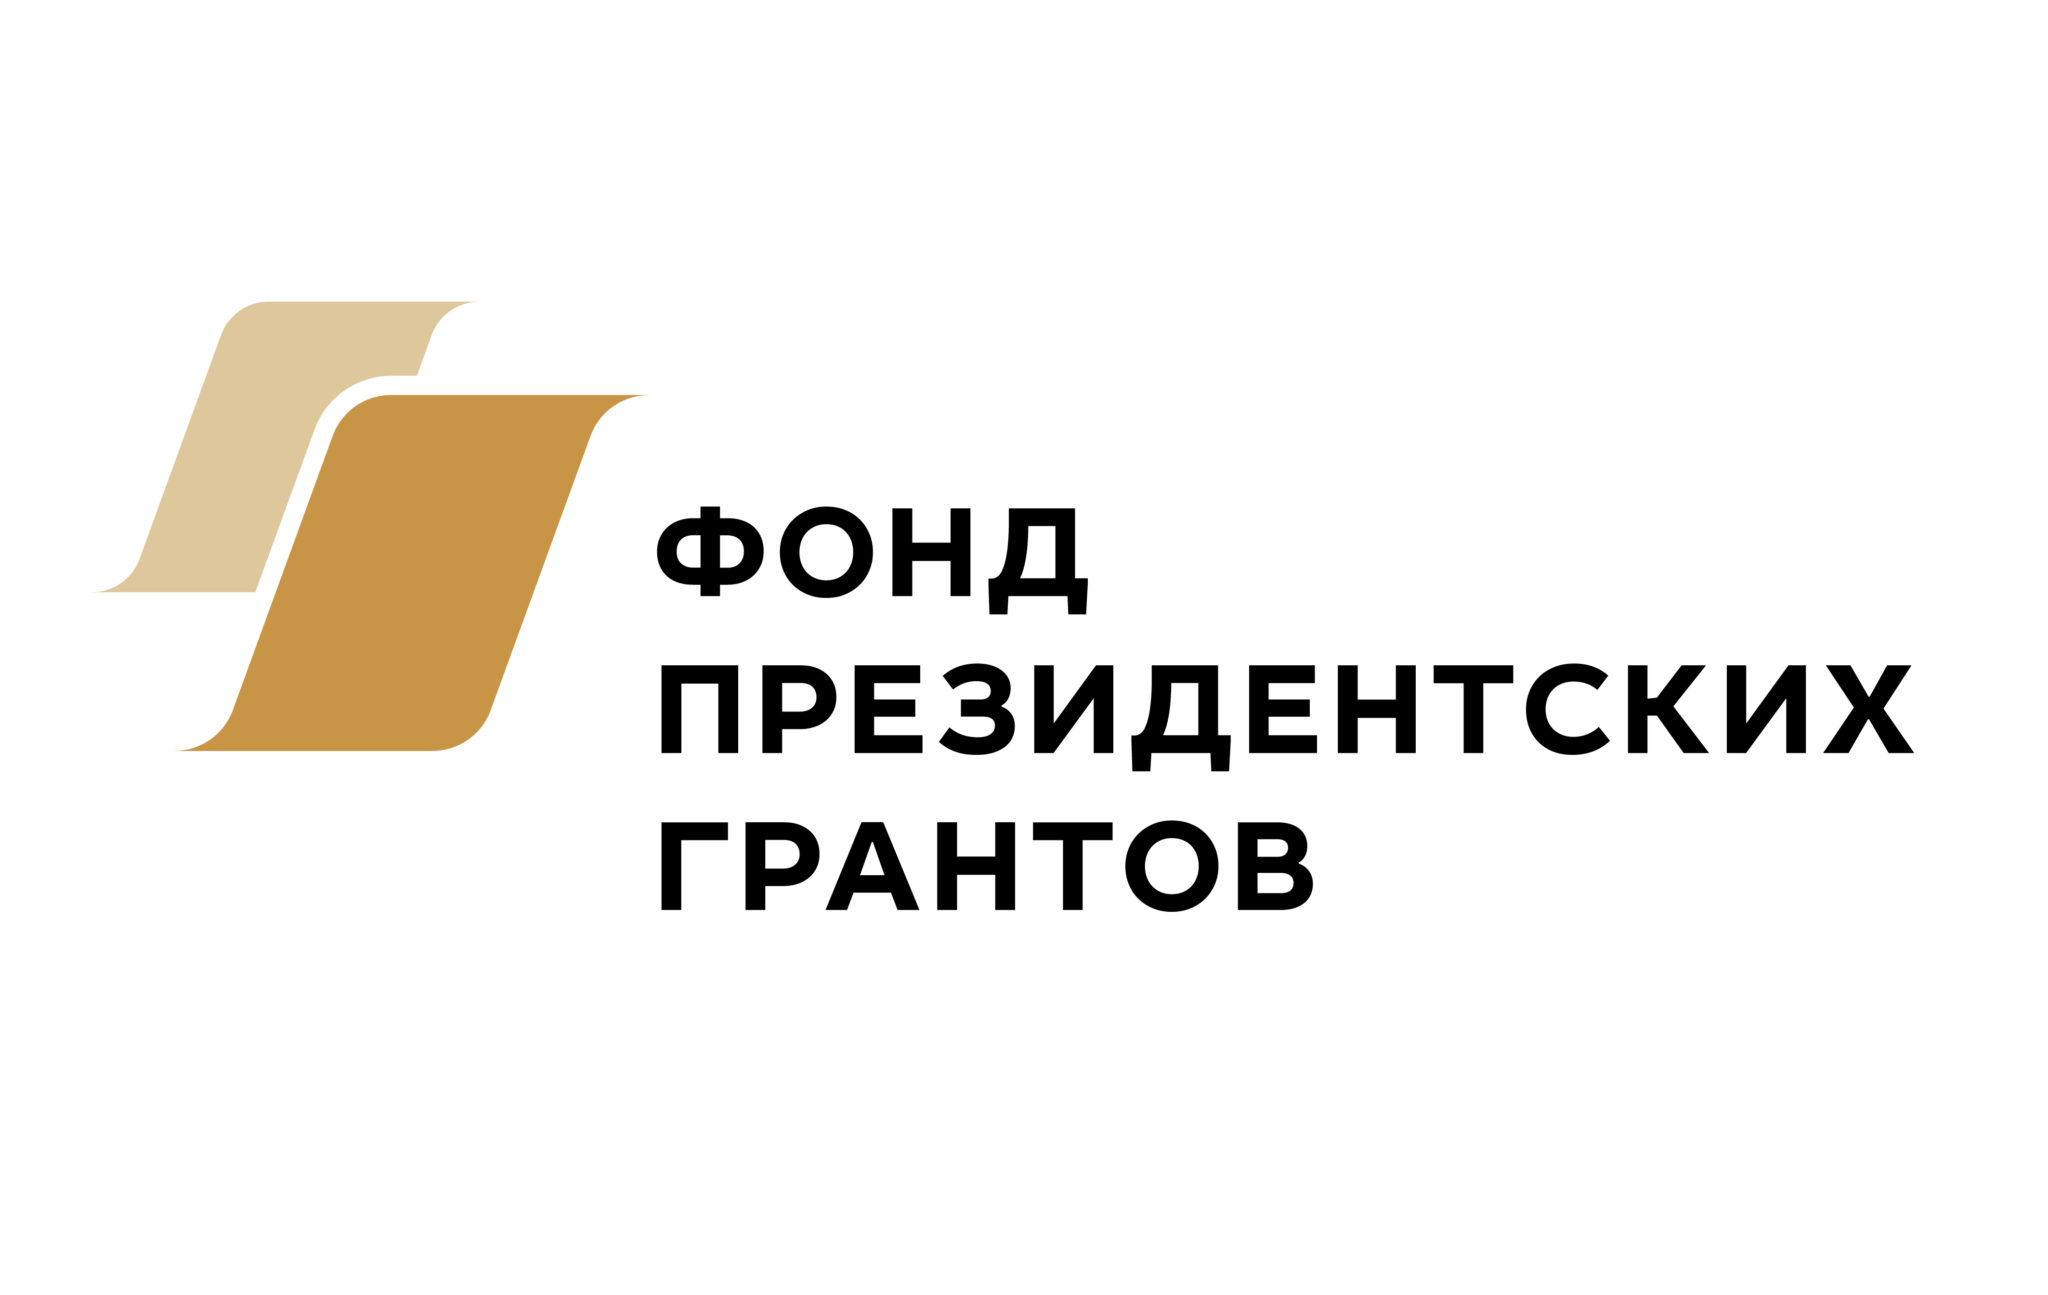 nko.krasnodar.ru logo 2048x1295